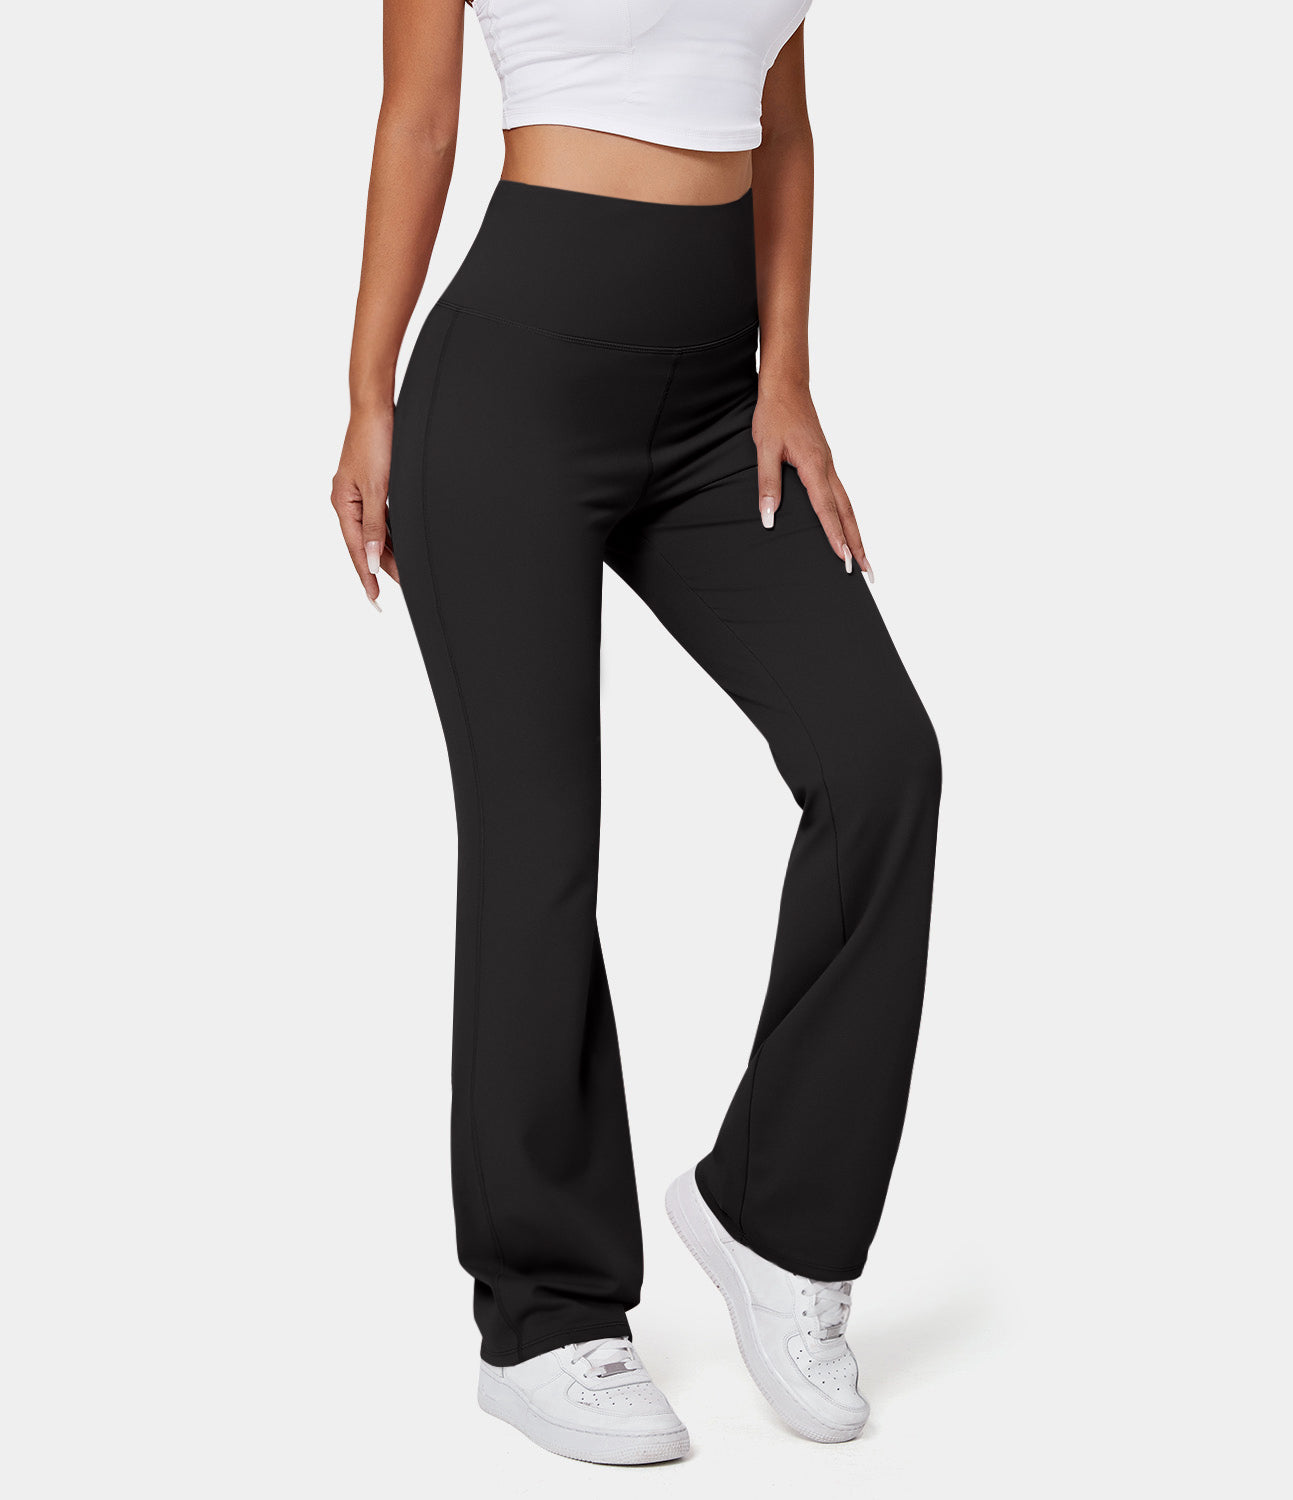 

Halara High Waisted Back Pocket Plain Slight Flare Leggings - Black -  gym leggings leggings with pockets leggings with butt lift